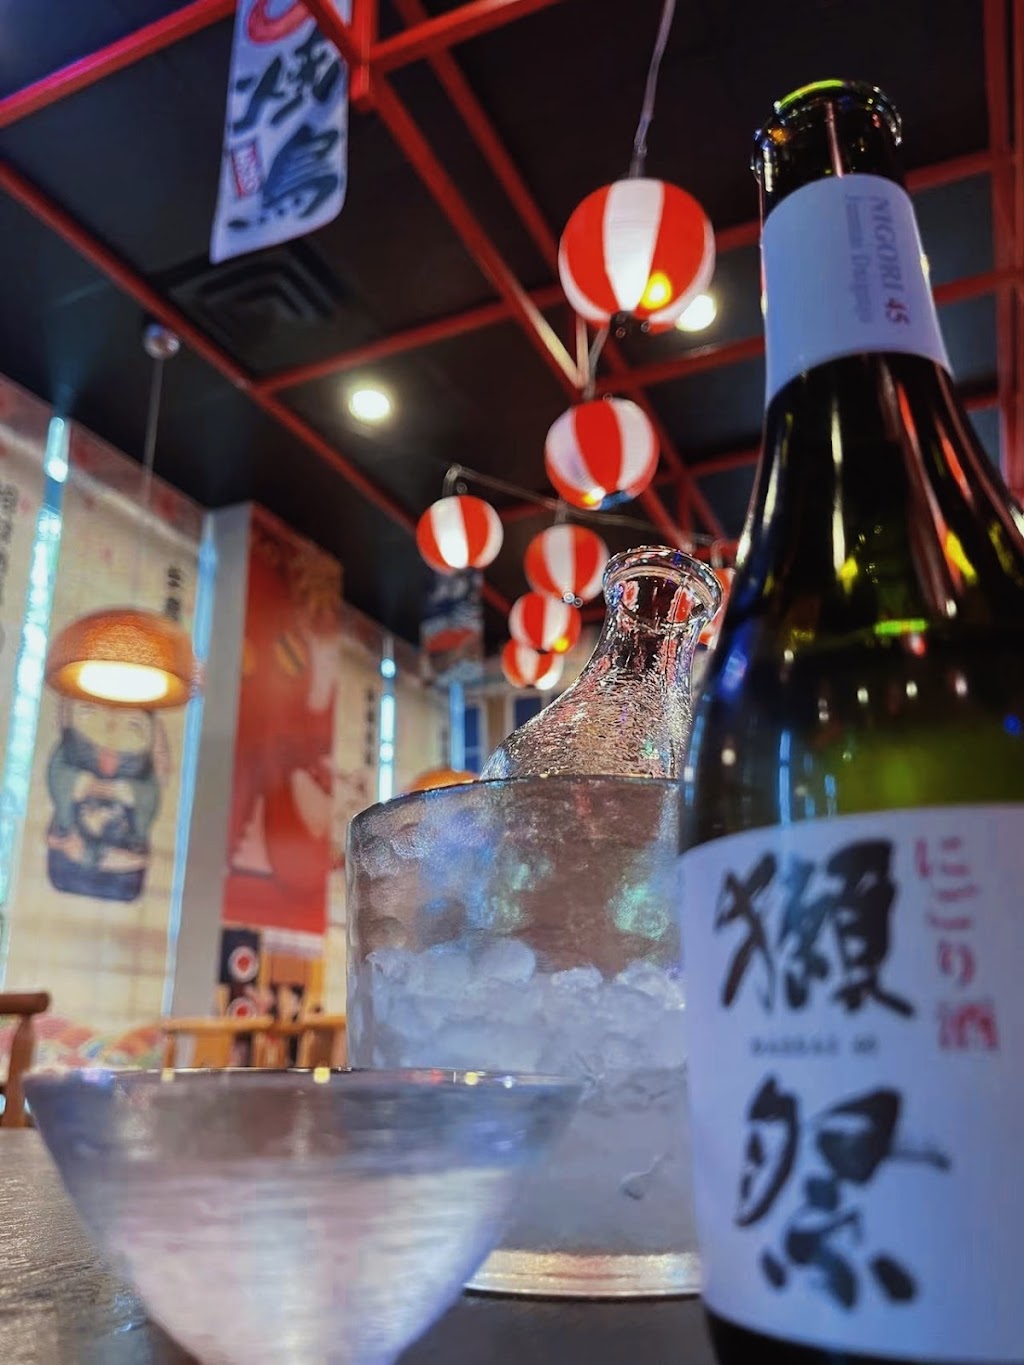 深夜食堂Meet Night Japanese Restaurant | restaurant | 2155 Allison Rd #222, Vancouver, BC V6T 1T5, Canada | 2364763370 OR +1 236-476-3370